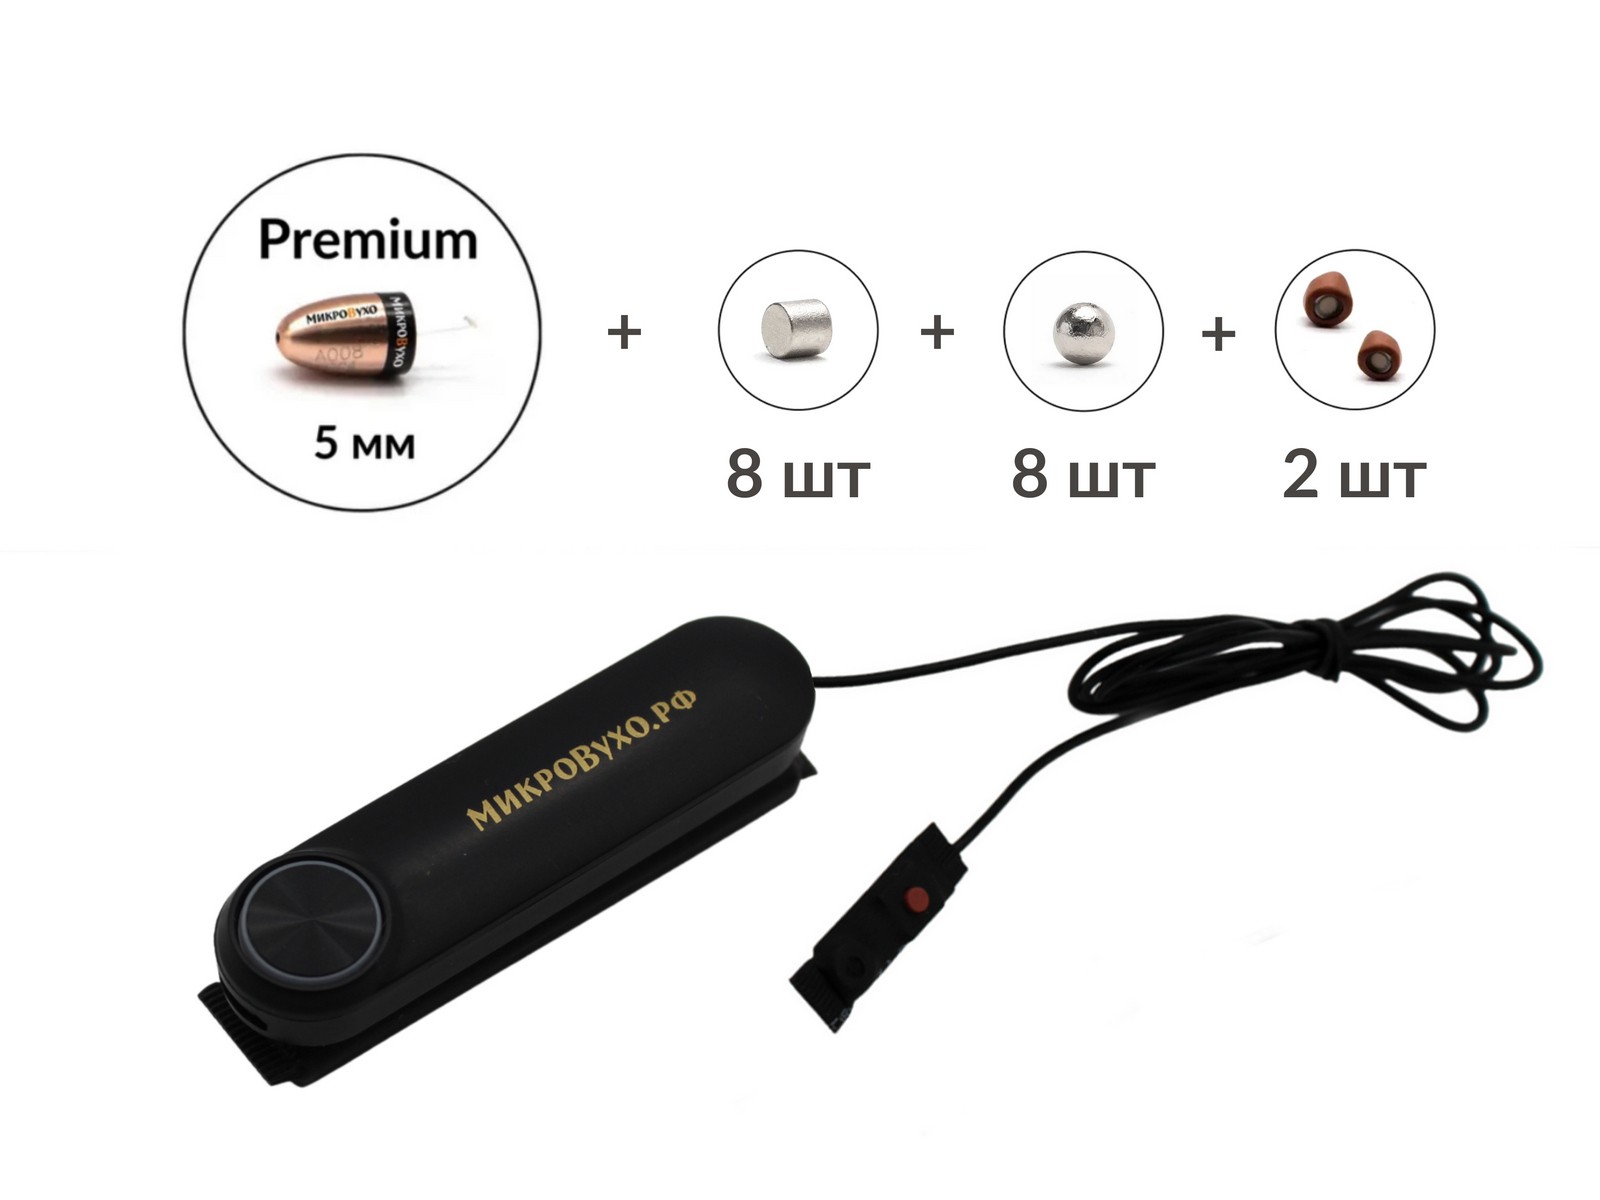 Универсальная гарнитура Bluetooth Box Standard Plus с капсулой Premium и магнитами 2 мм - изображение 2